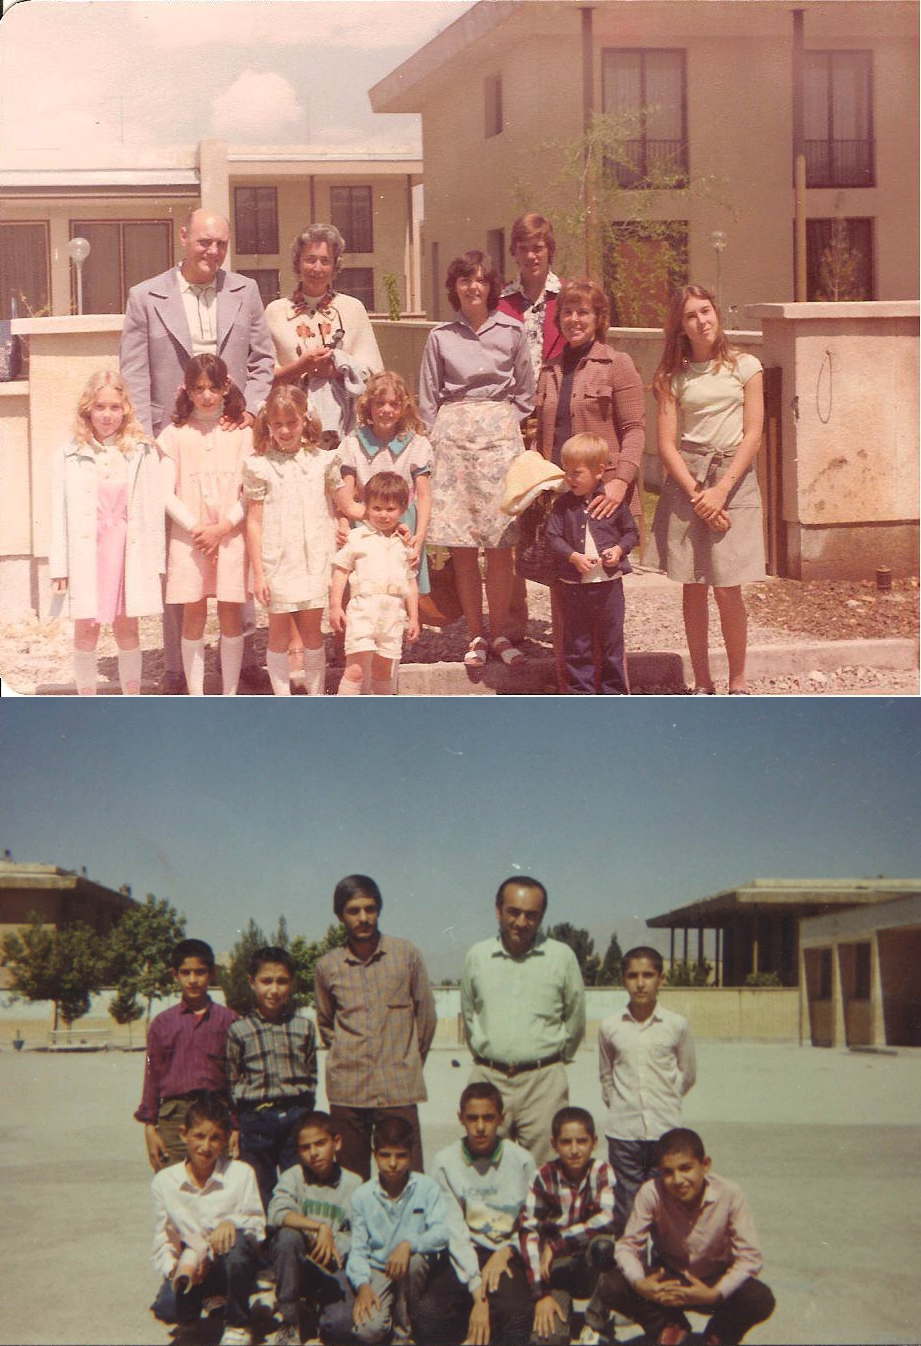 Khaneh Esfahan gathering, 1976, and 2014.